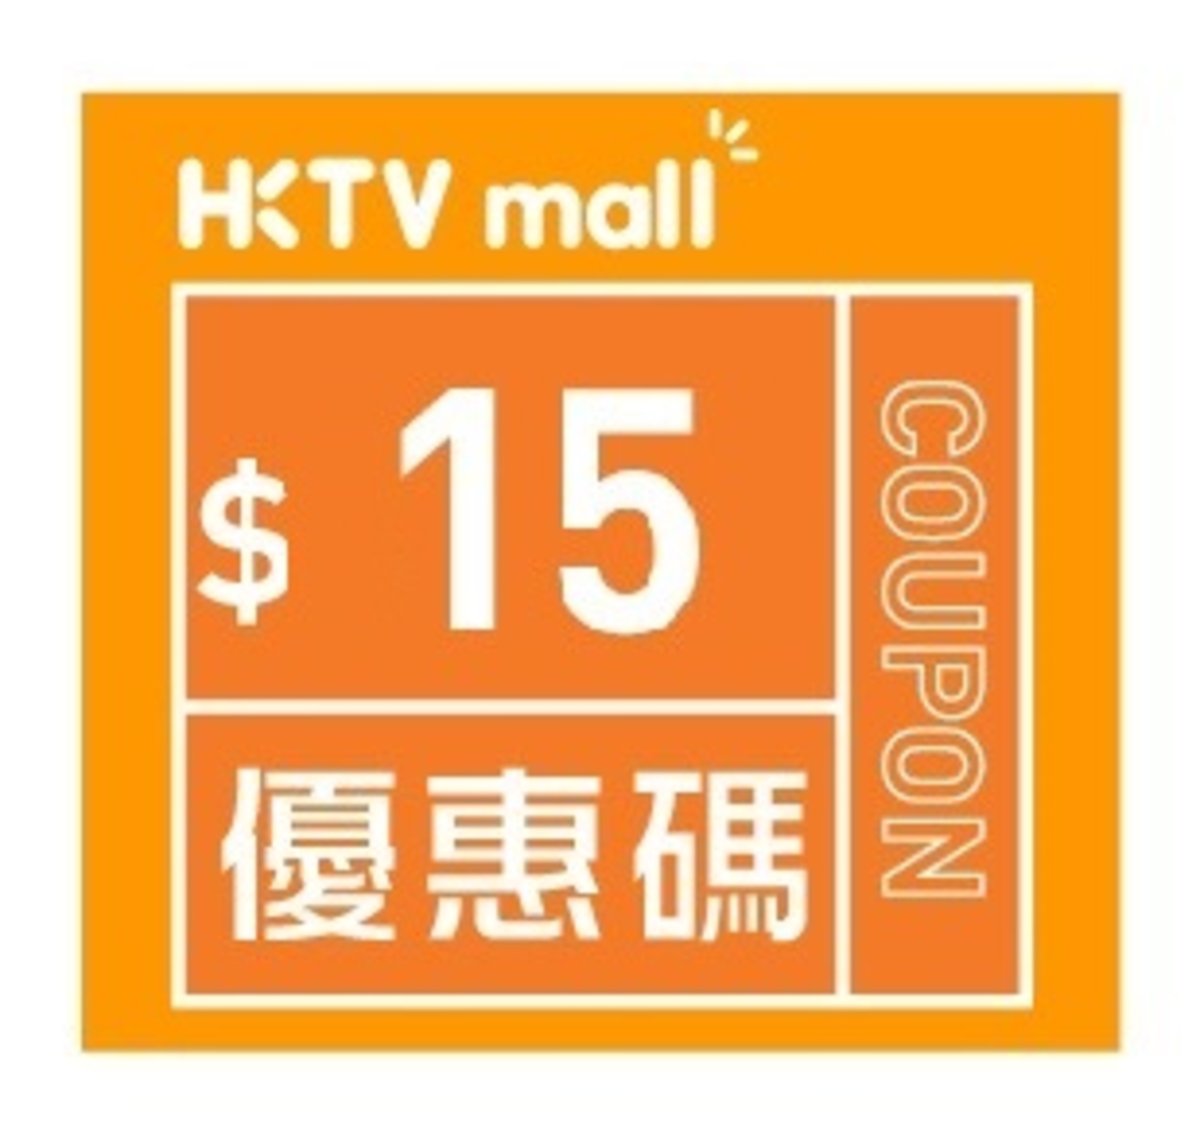 HKTVmall $15購物優惠碼 [有效日期： 2019.11.01 - 2019.12.31]